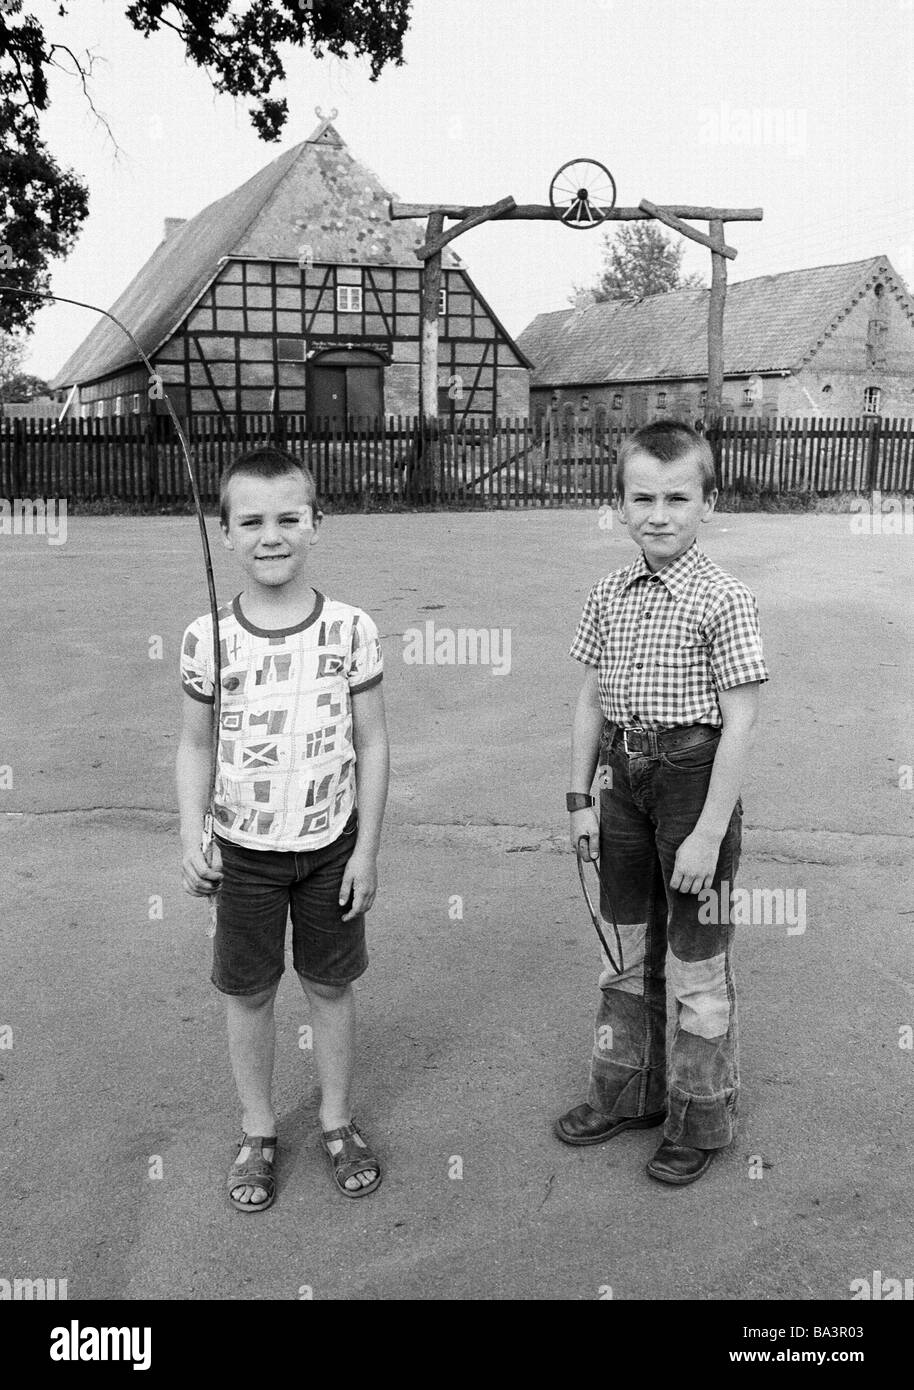 Années 1980, photo en noir et blanc, les gens, les enfants, deux garçons posent devant une ferme à Juergenstorf, âgés de 6 à 10 ans, D-D-Luedersburg-Juergenstorf Luedersburg, commune, Scharnebeck, réserve naturelle Elbufer-Drawehn, Basse-Saxe Banque D'Images